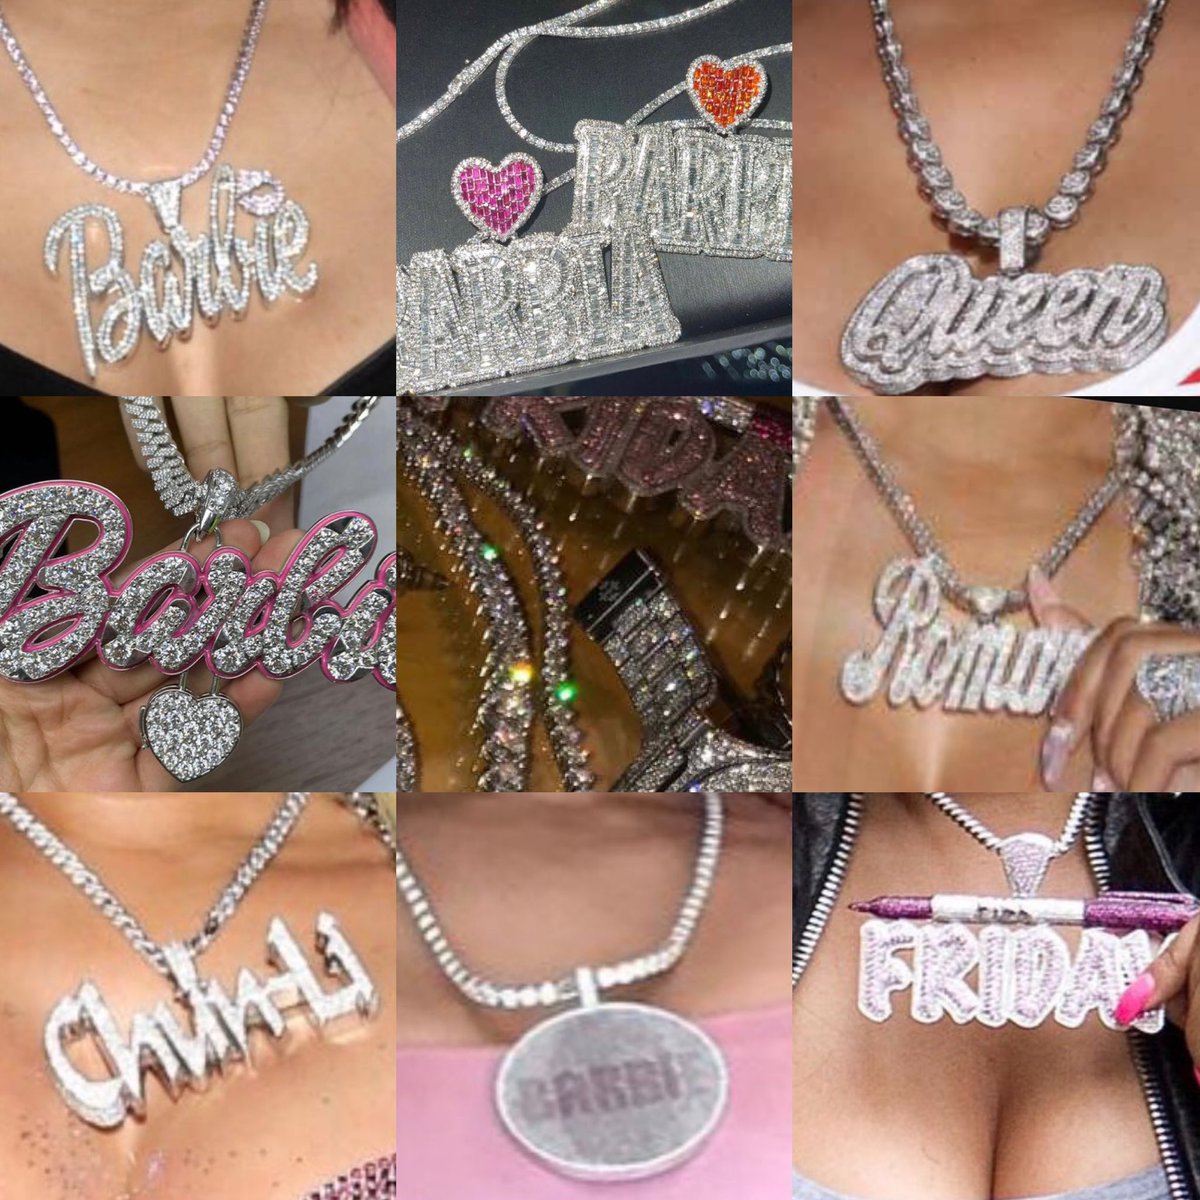 Nicki Minaj Hands Down has the best set of customized Jewelry 💖🦄